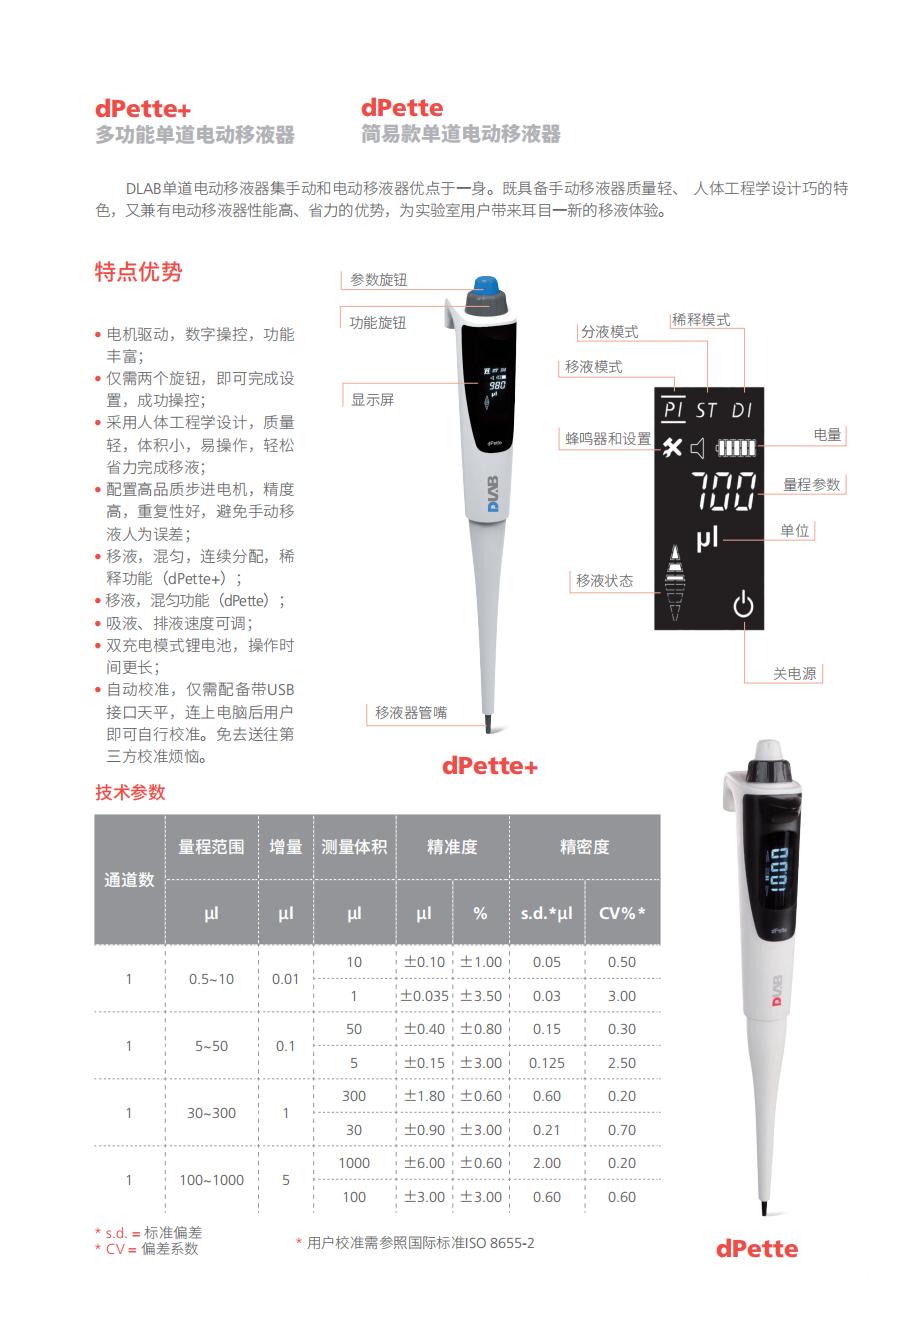 dPette简易款电动移液器,量程:100-1000,7016301004,大龙